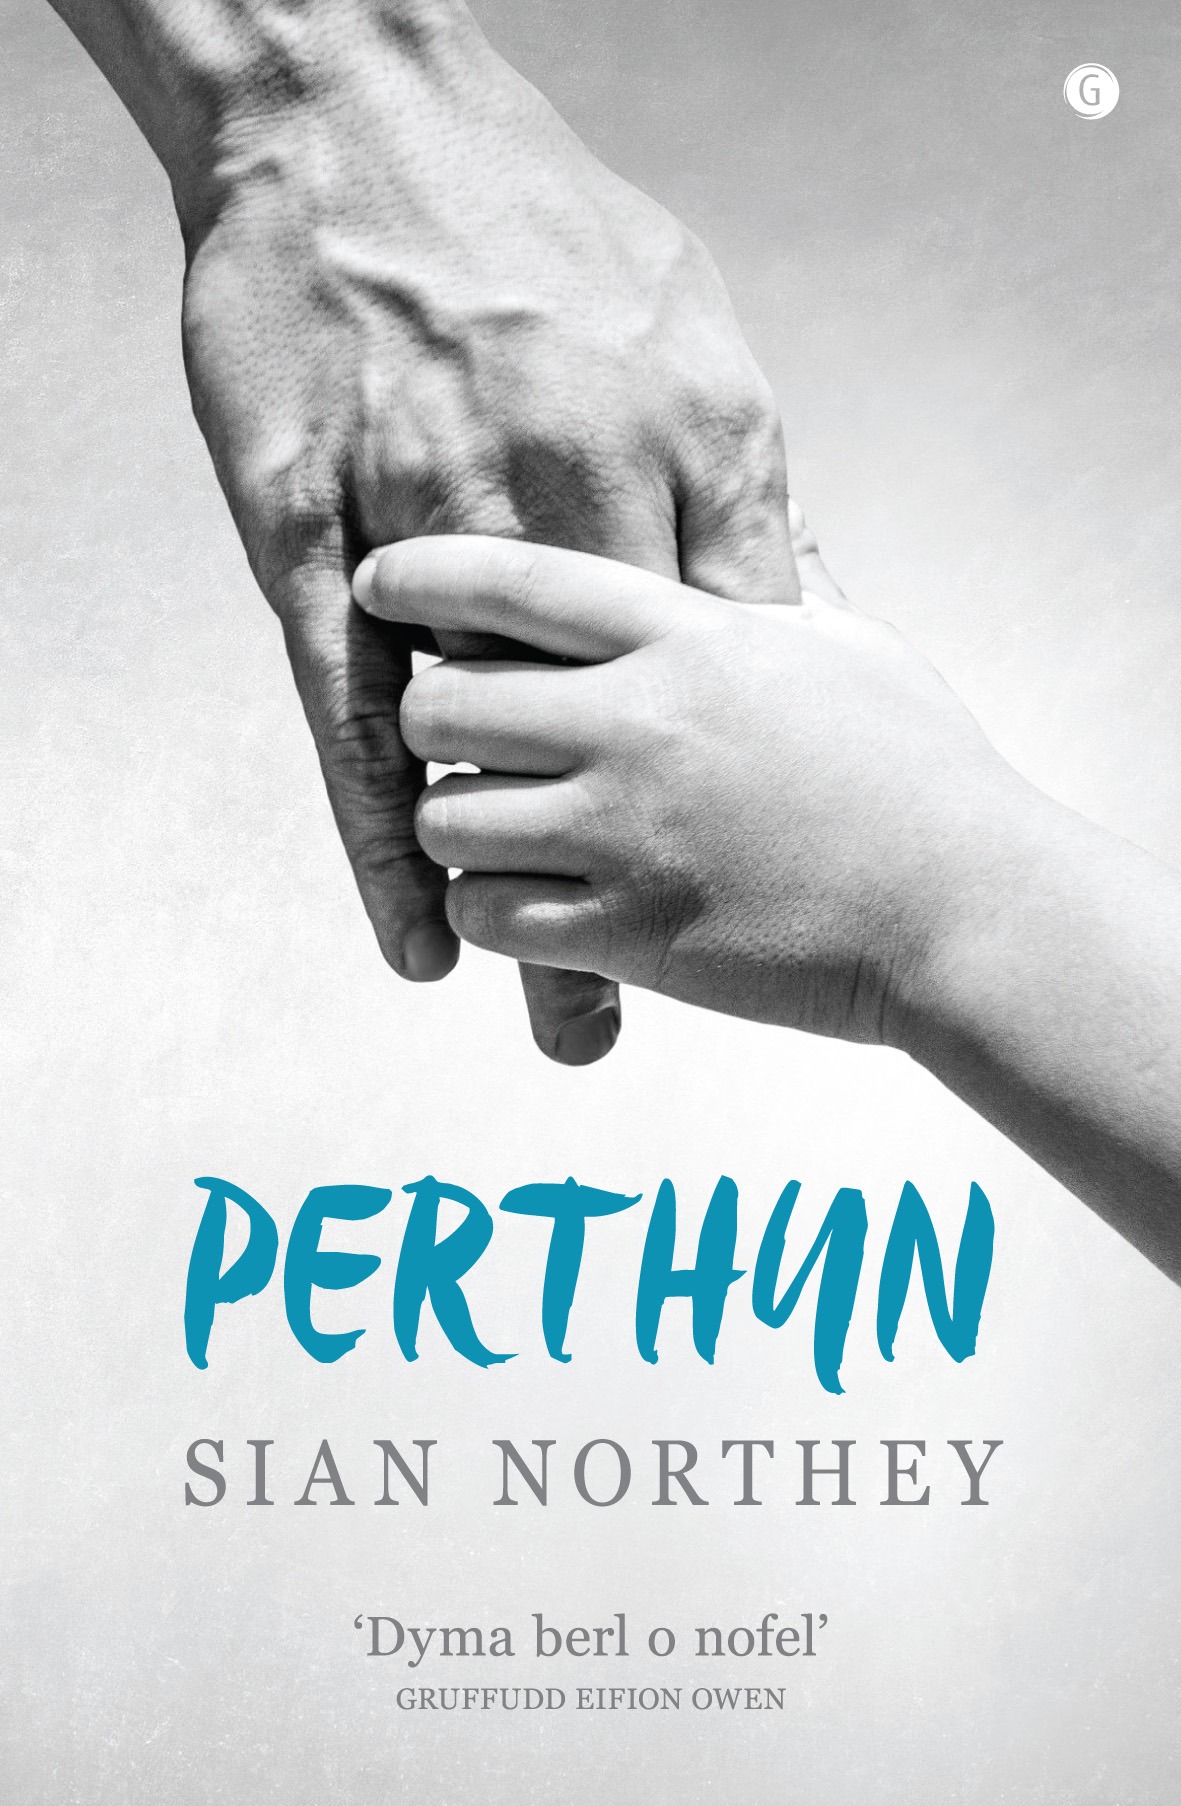 Siân Northey Perthyn